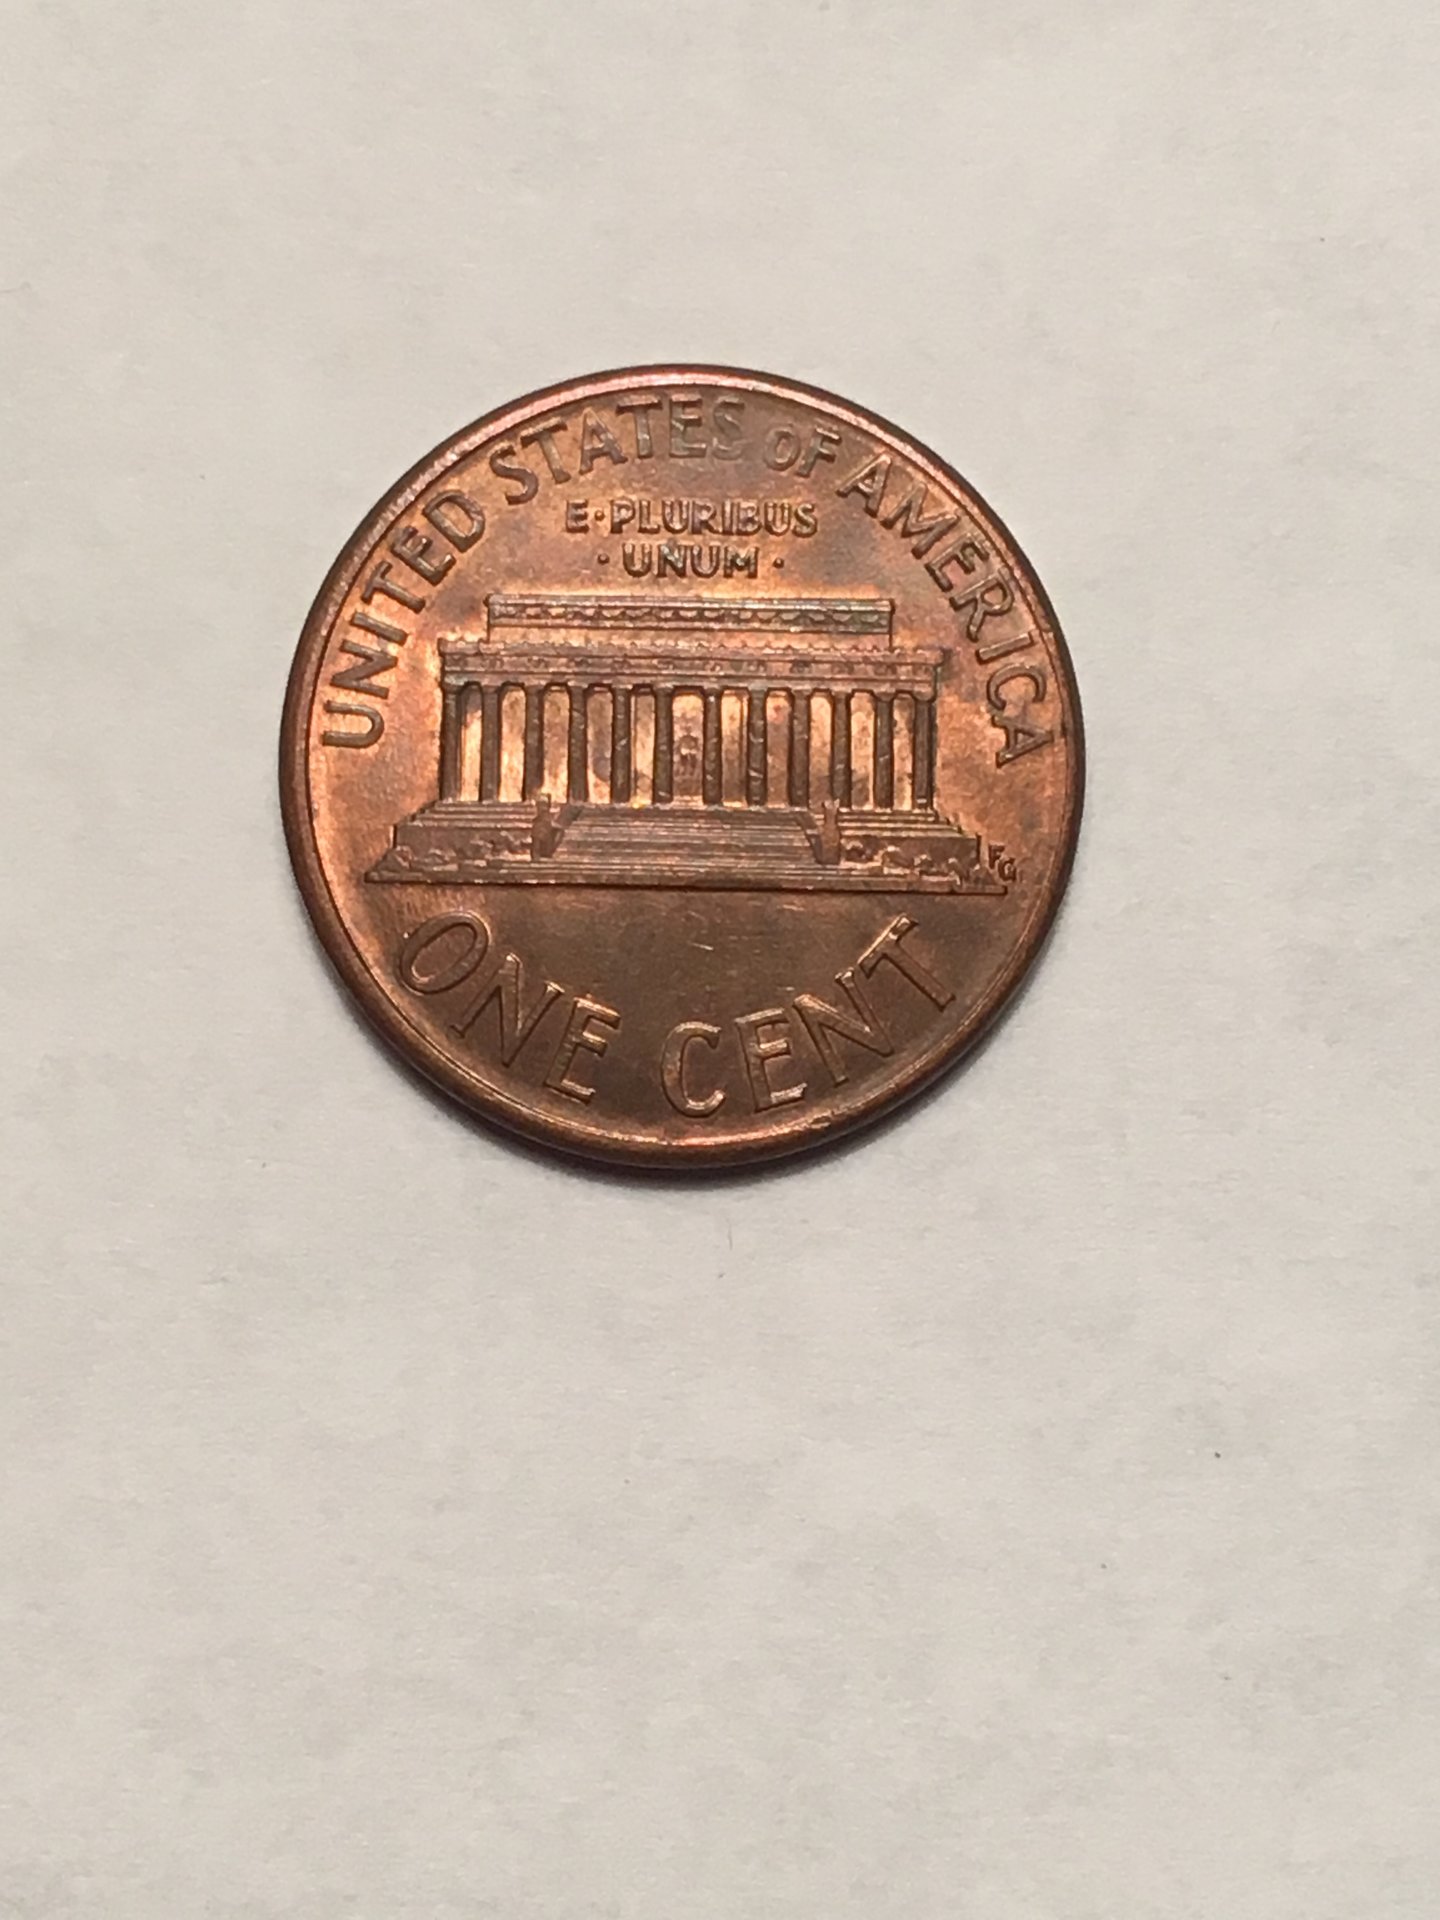 1989 D penny double 8? | Coin Talk